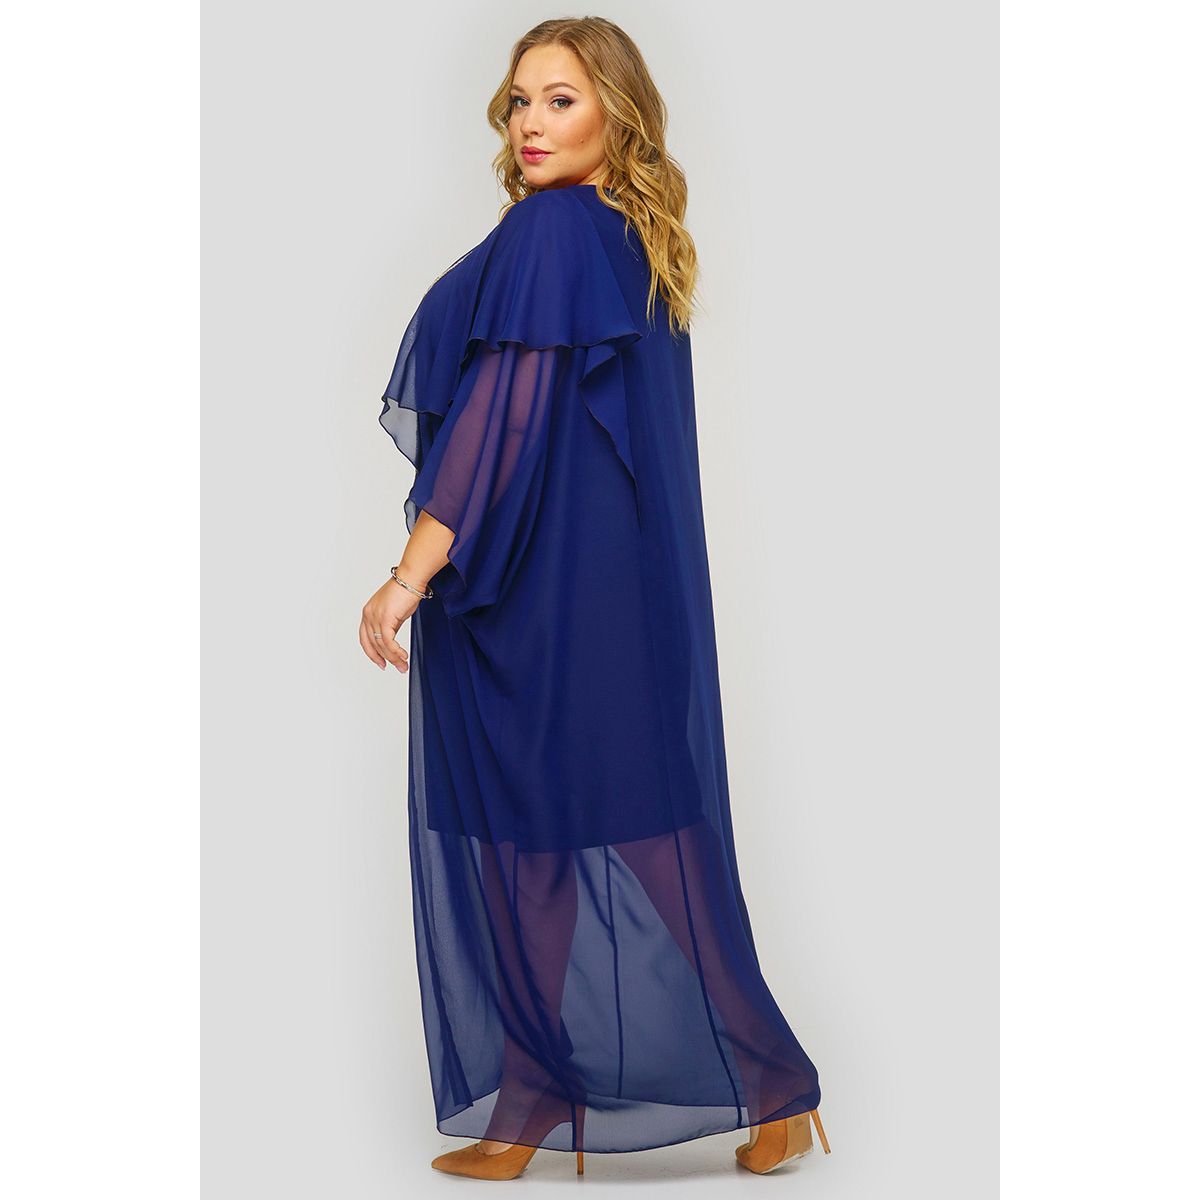 Платье длинное из темно-синего шифона, с украшением.